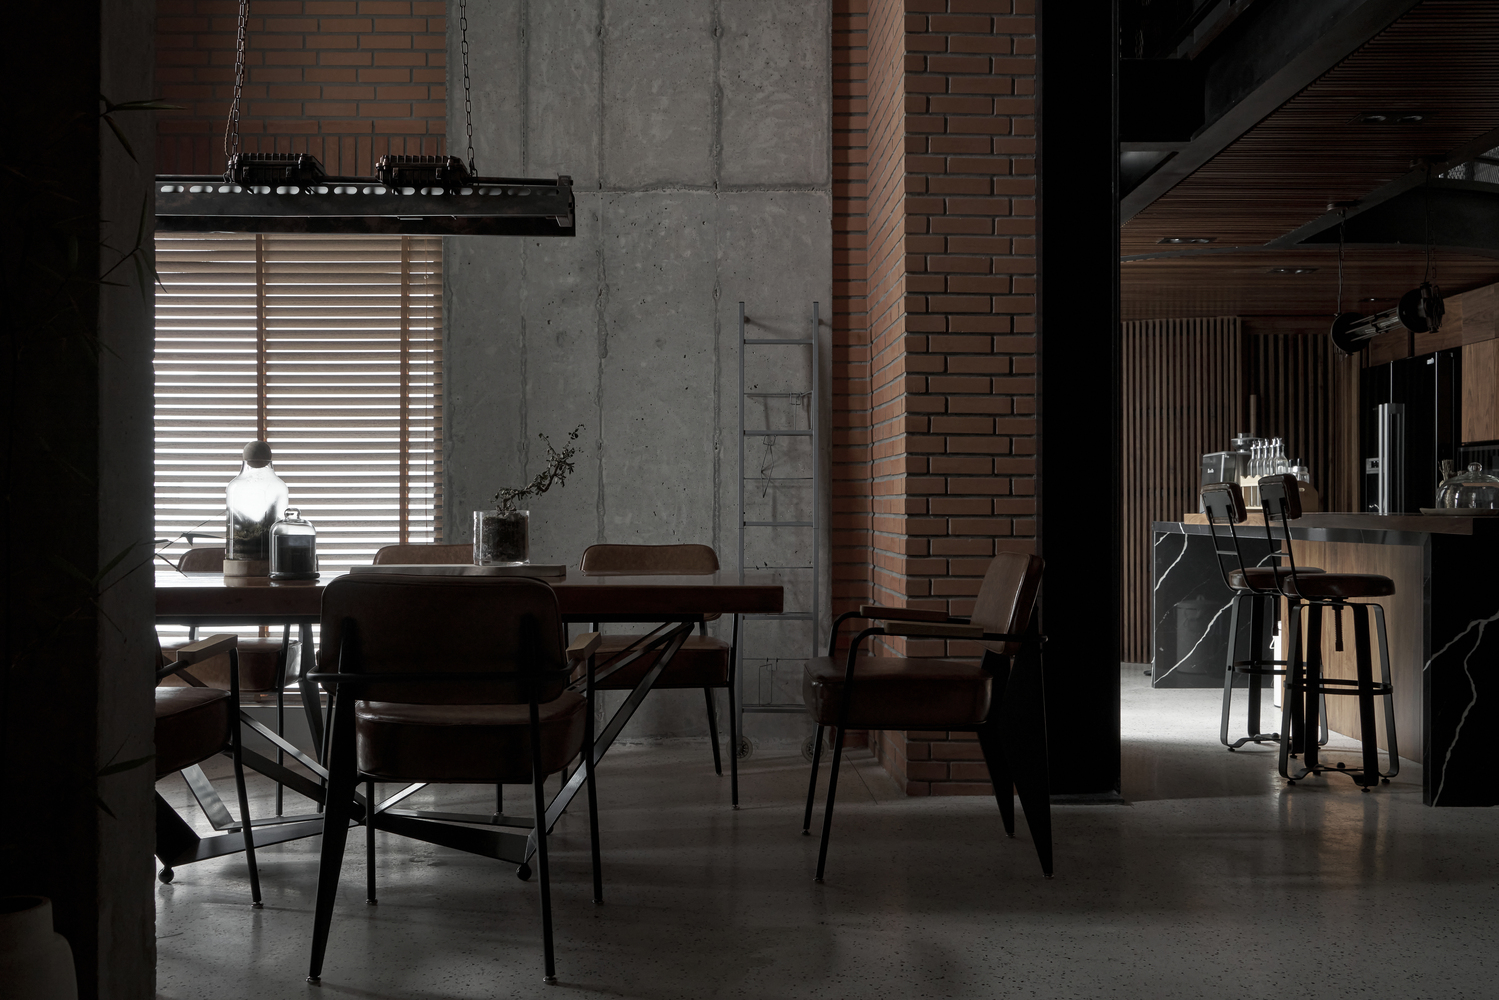 hình ảnh phòng bếp ăn trong căn hộ phong cách công nghiệp với tường gạch, bê tông, sắt thep hoen gỉ